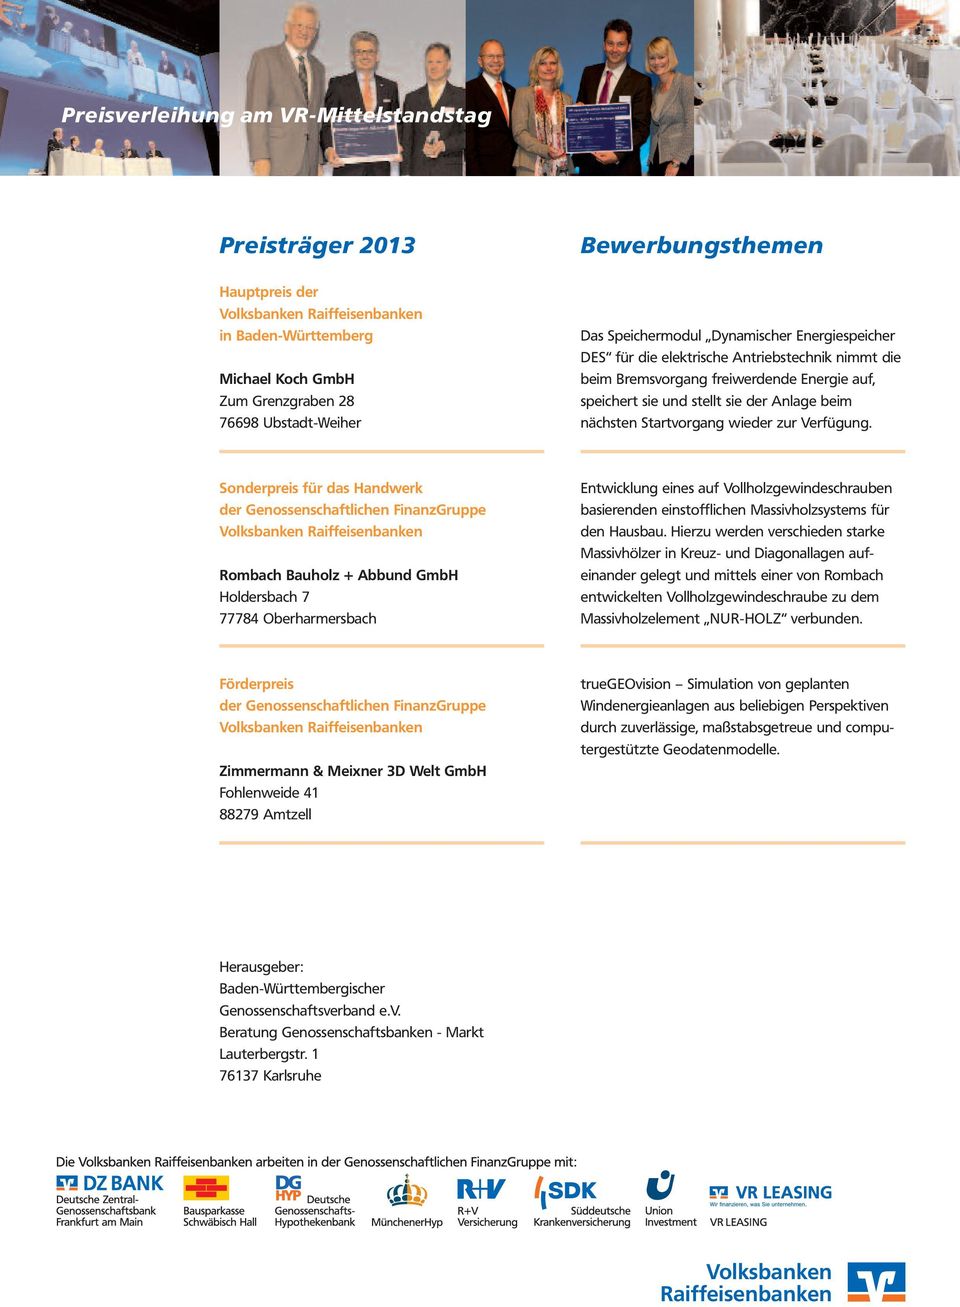 Sonderpreis für das Handwerk Rombach Bauholz + Abbund GmbH Holdersbach 7 77784 Oberharmersbach Entwicklung eines auf Vollholzgewindeschrauben basierenden einstofflichen Massivholzsystems für den